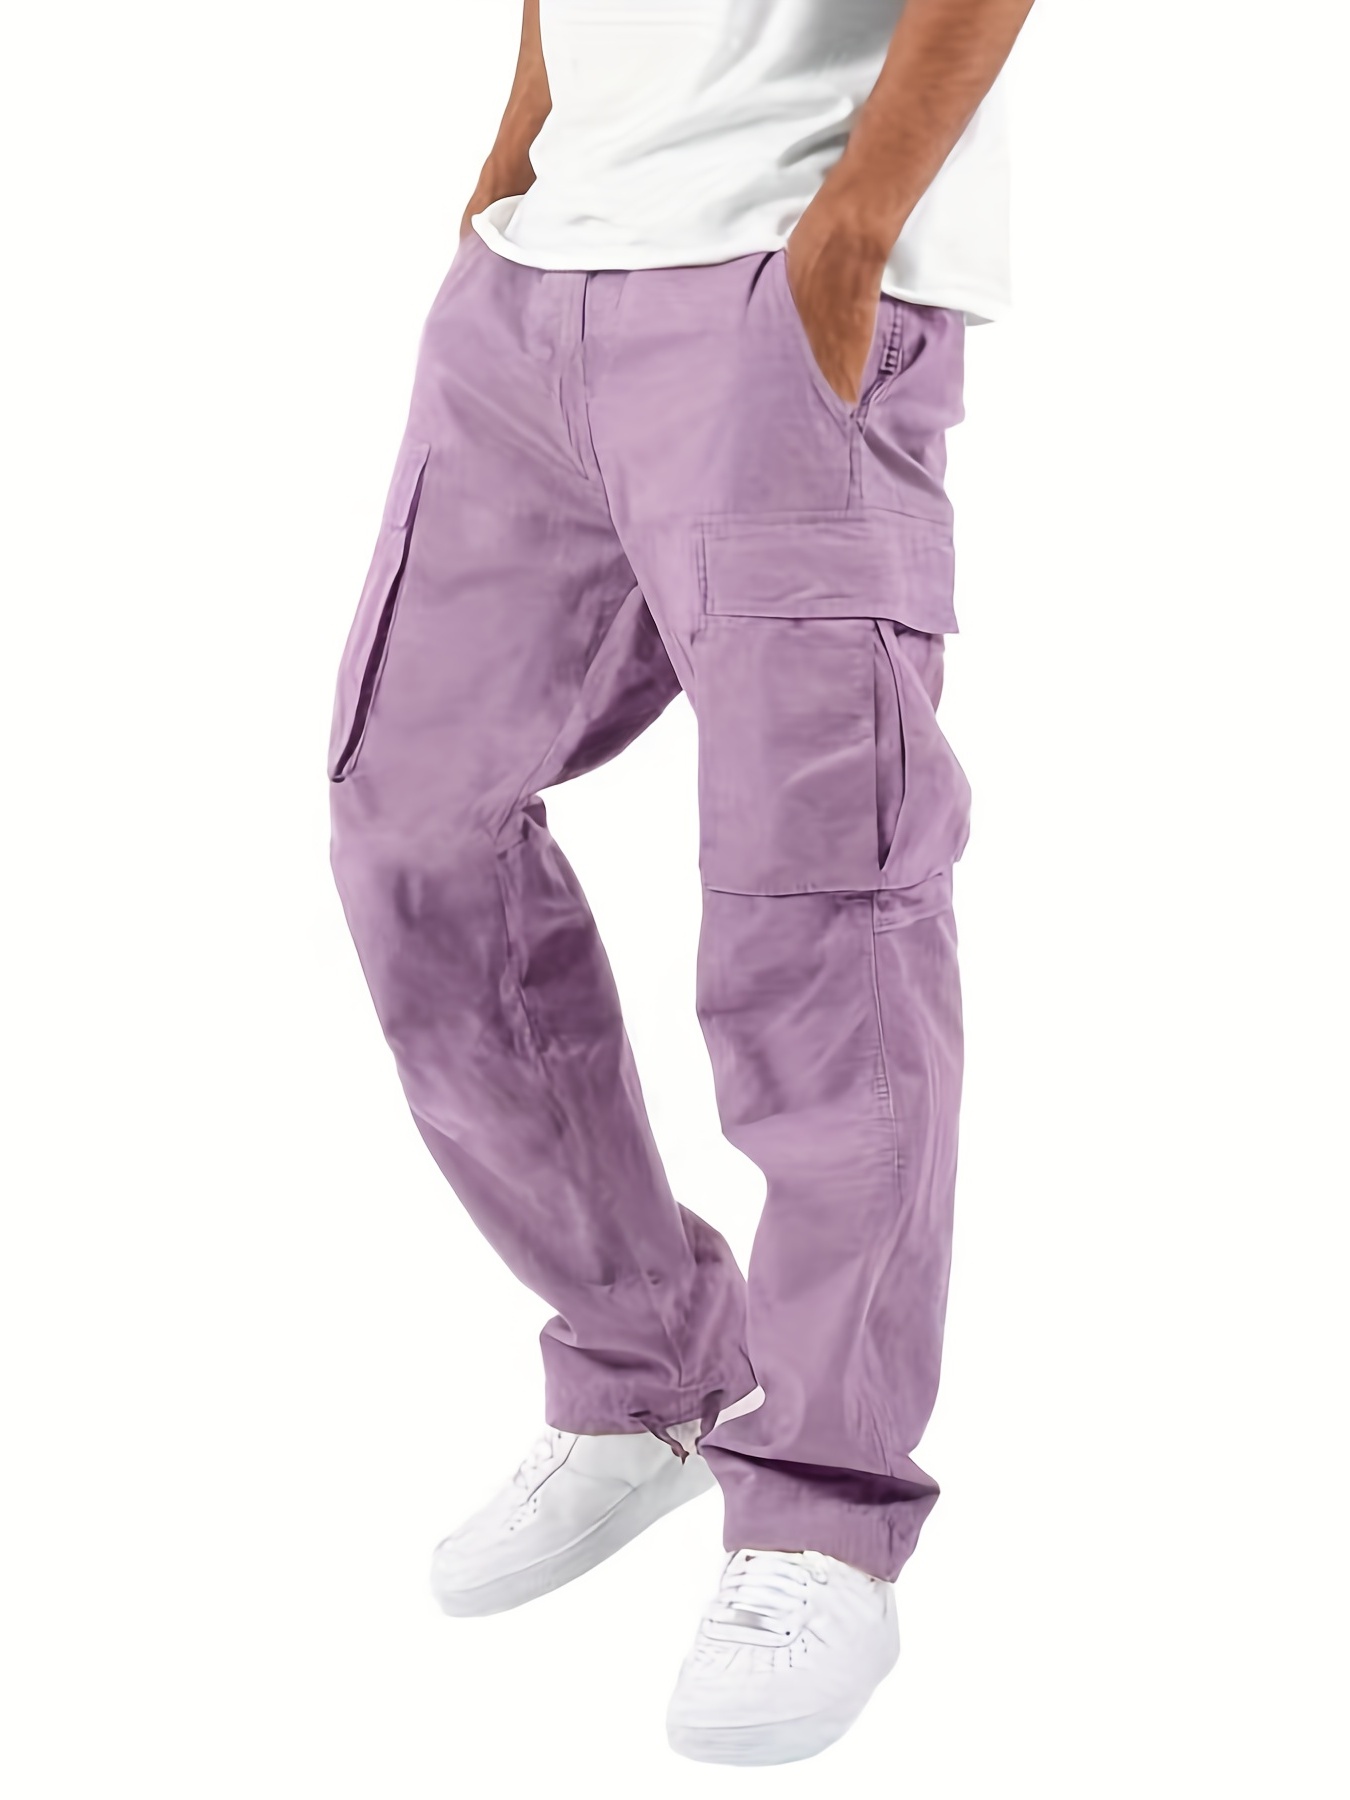 Pantalones chandal de Joggers para Hombre de algodón